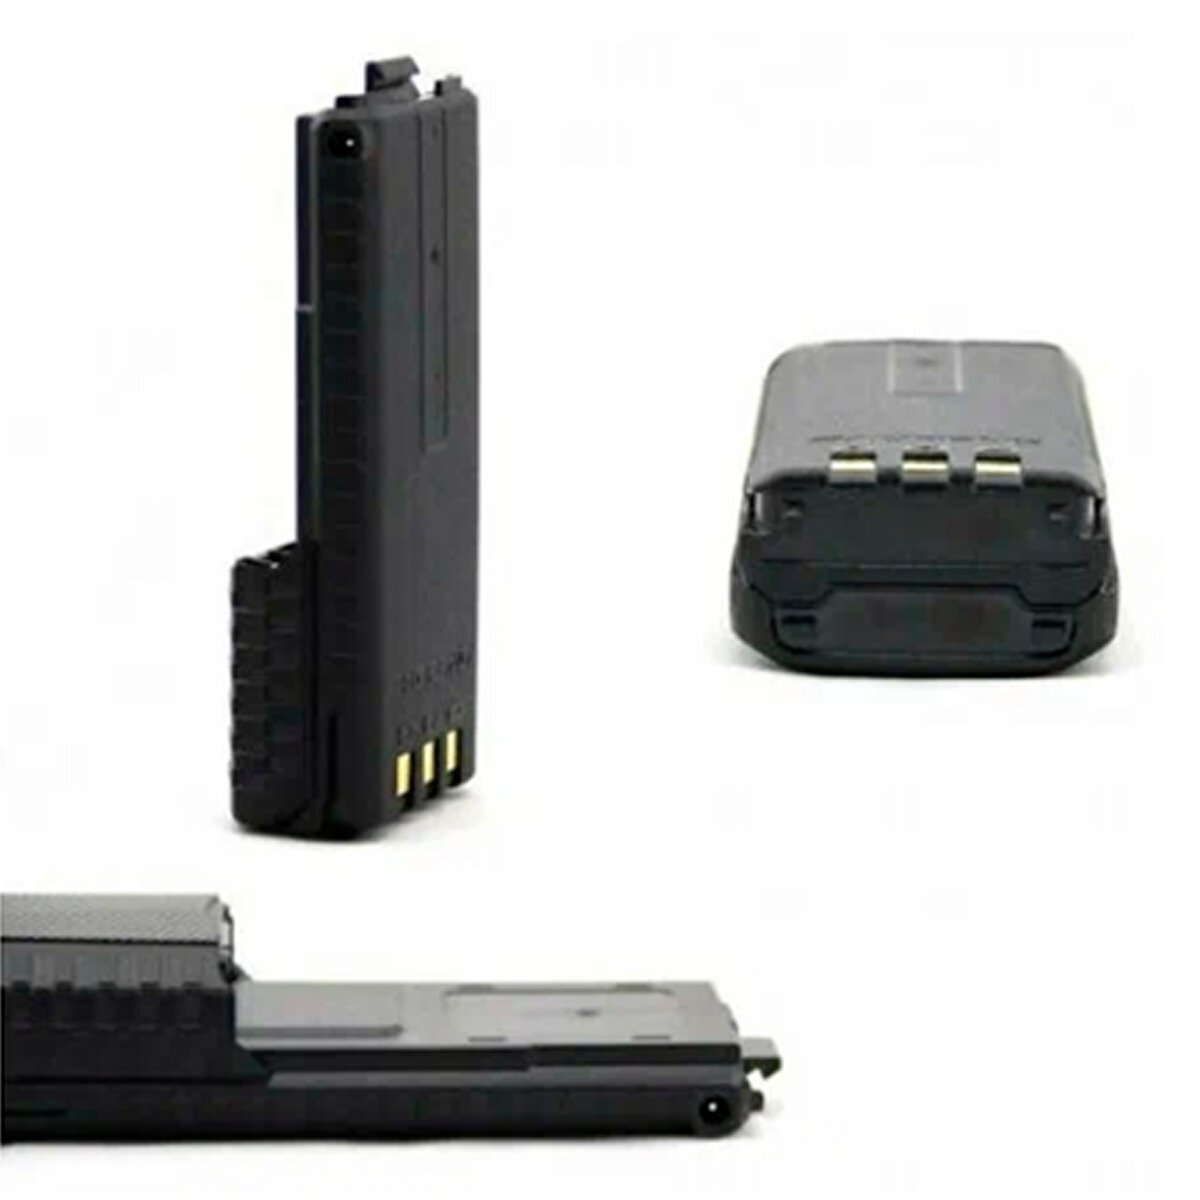 Аккумулятор для рации Baofeng UV-5R повышенной емкости 3800 mАч, комплект 2 шт